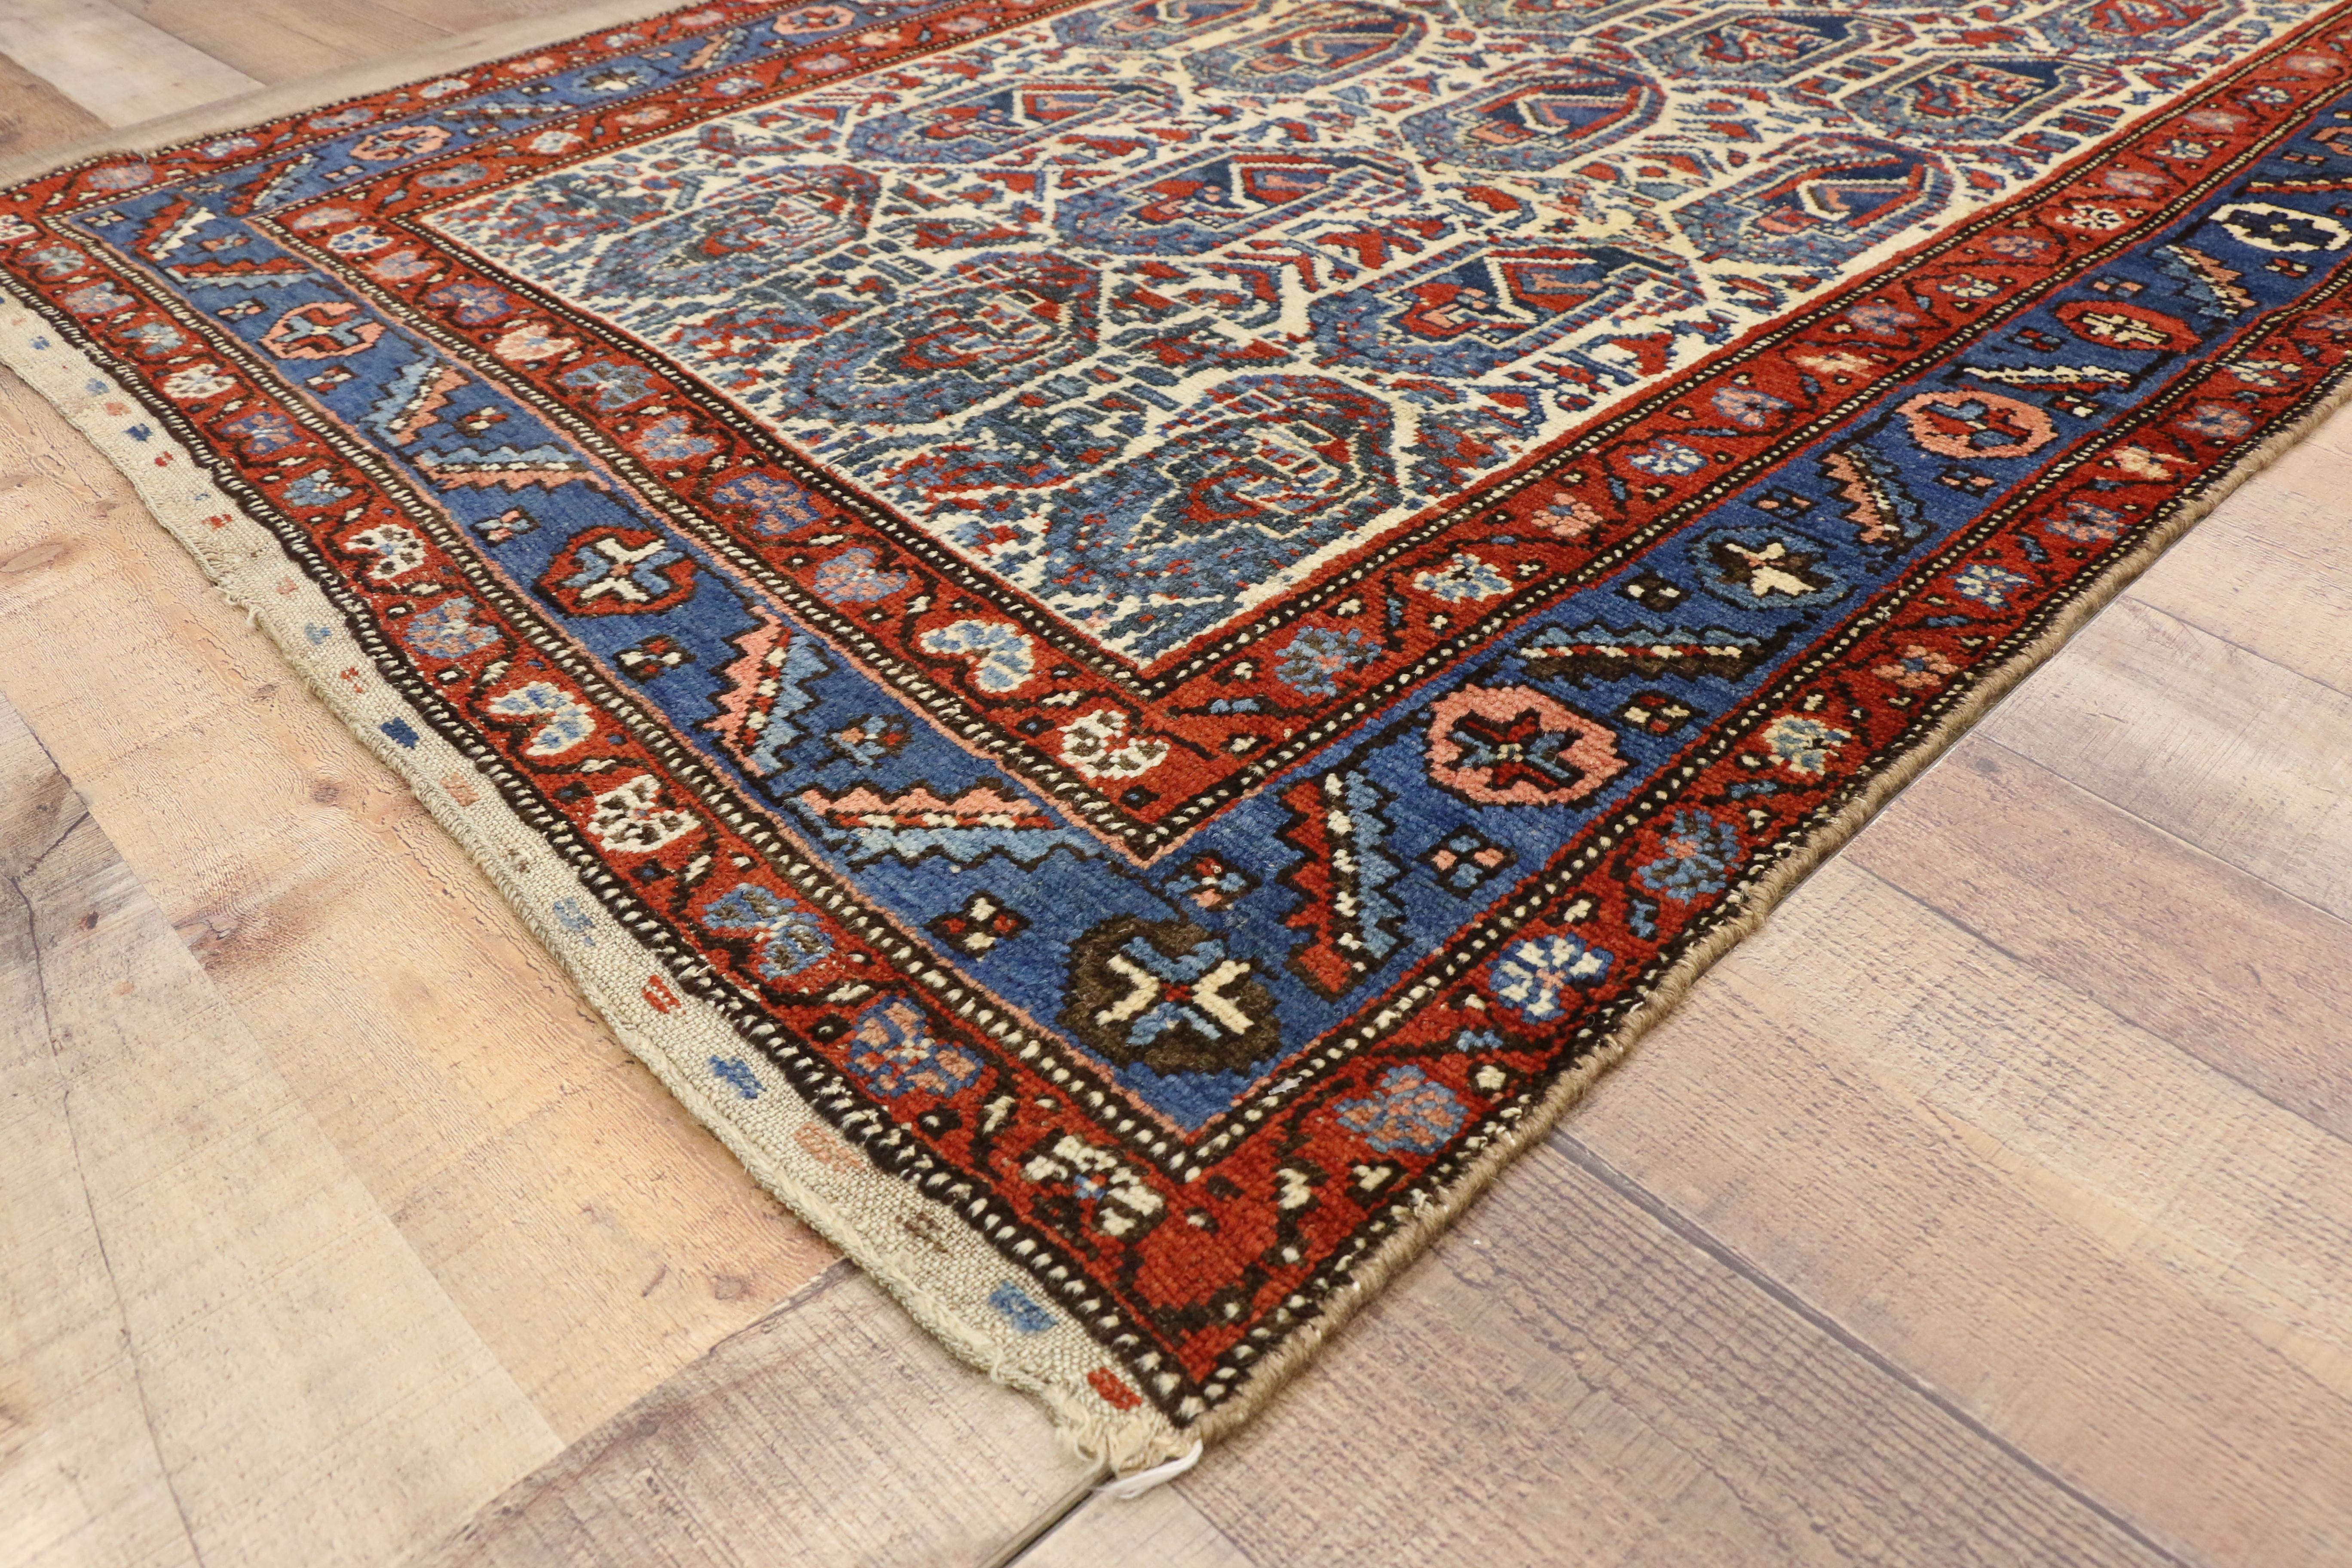 71867, Vintage-Teppich von Kurd mit blauem Boteh-Muster. Dieser handgeknüpfte alte persische Kurdenteppich aus Wolle mit blauem Boteh-Muster ist ein beeindruckendes Beispiel für kurdische Webkunst. Blaue Botehs, die auch als Paisleys bekannt sind,